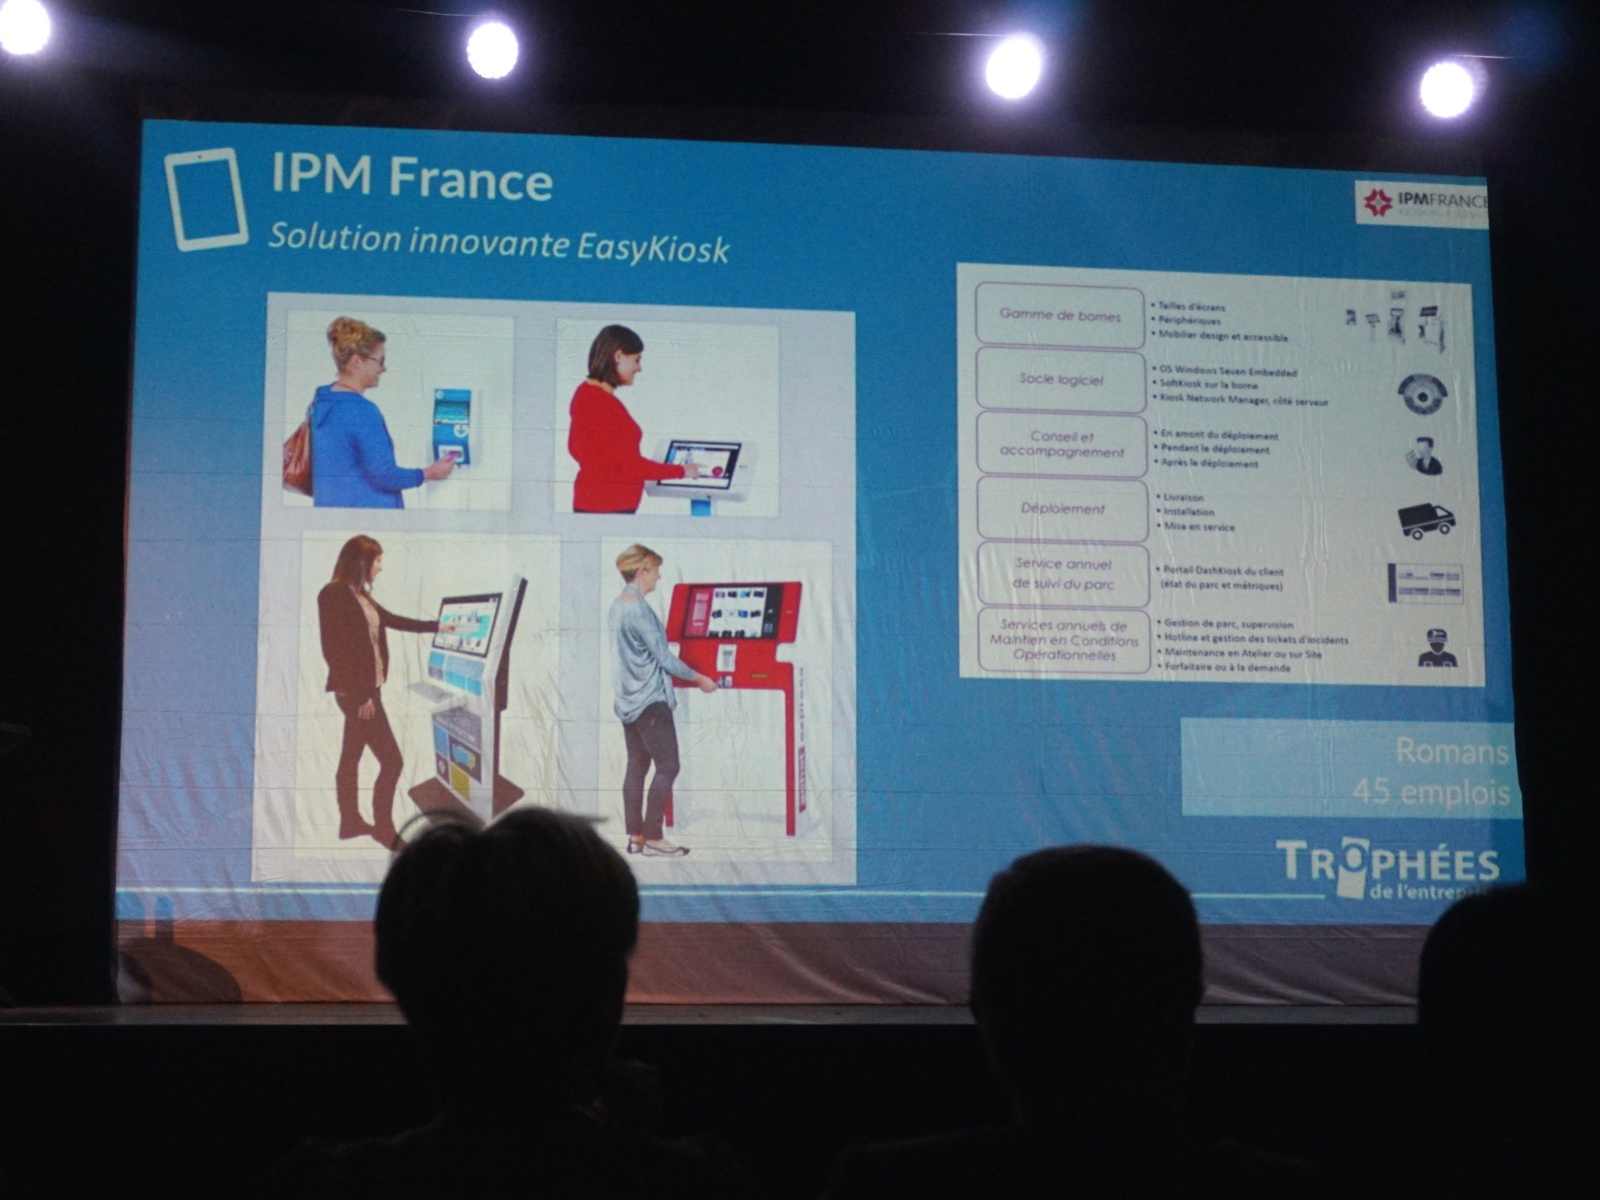 Kiosco interactivo IPM France